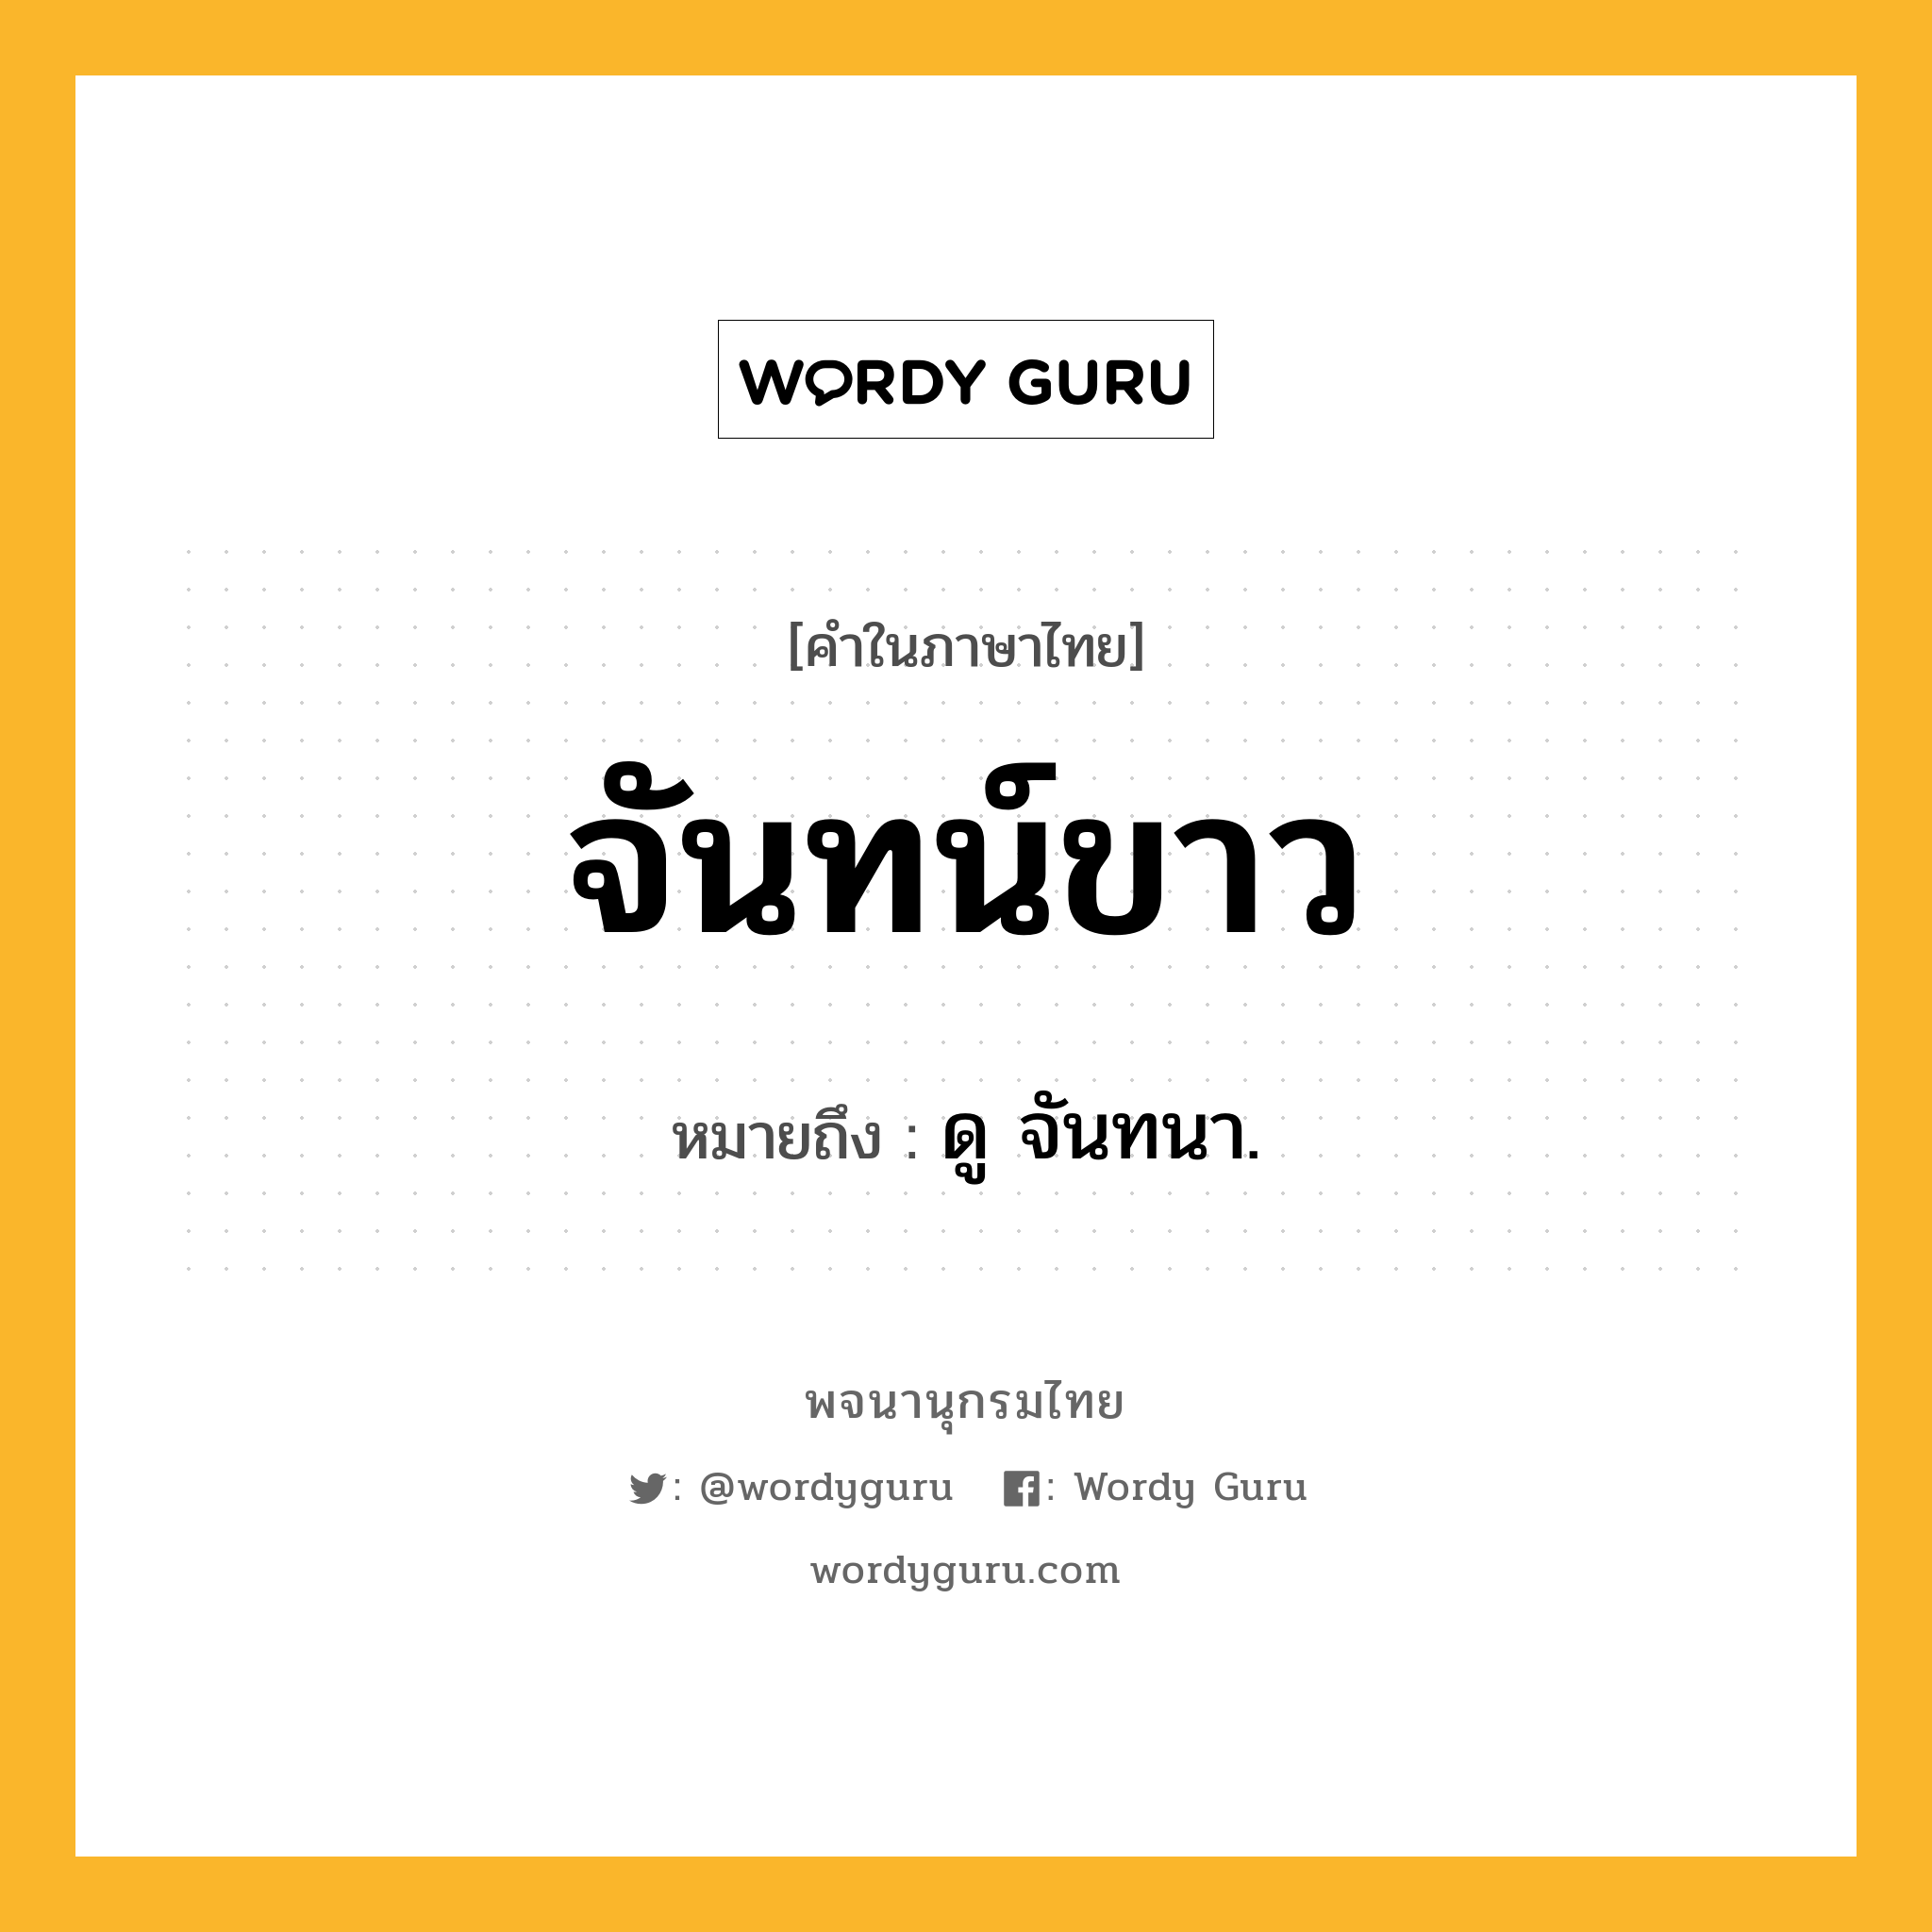 จันทน์ขาว ความหมาย หมายถึงอะไร?, คำในภาษาไทย จันทน์ขาว หมายถึง ดู จันทนา.